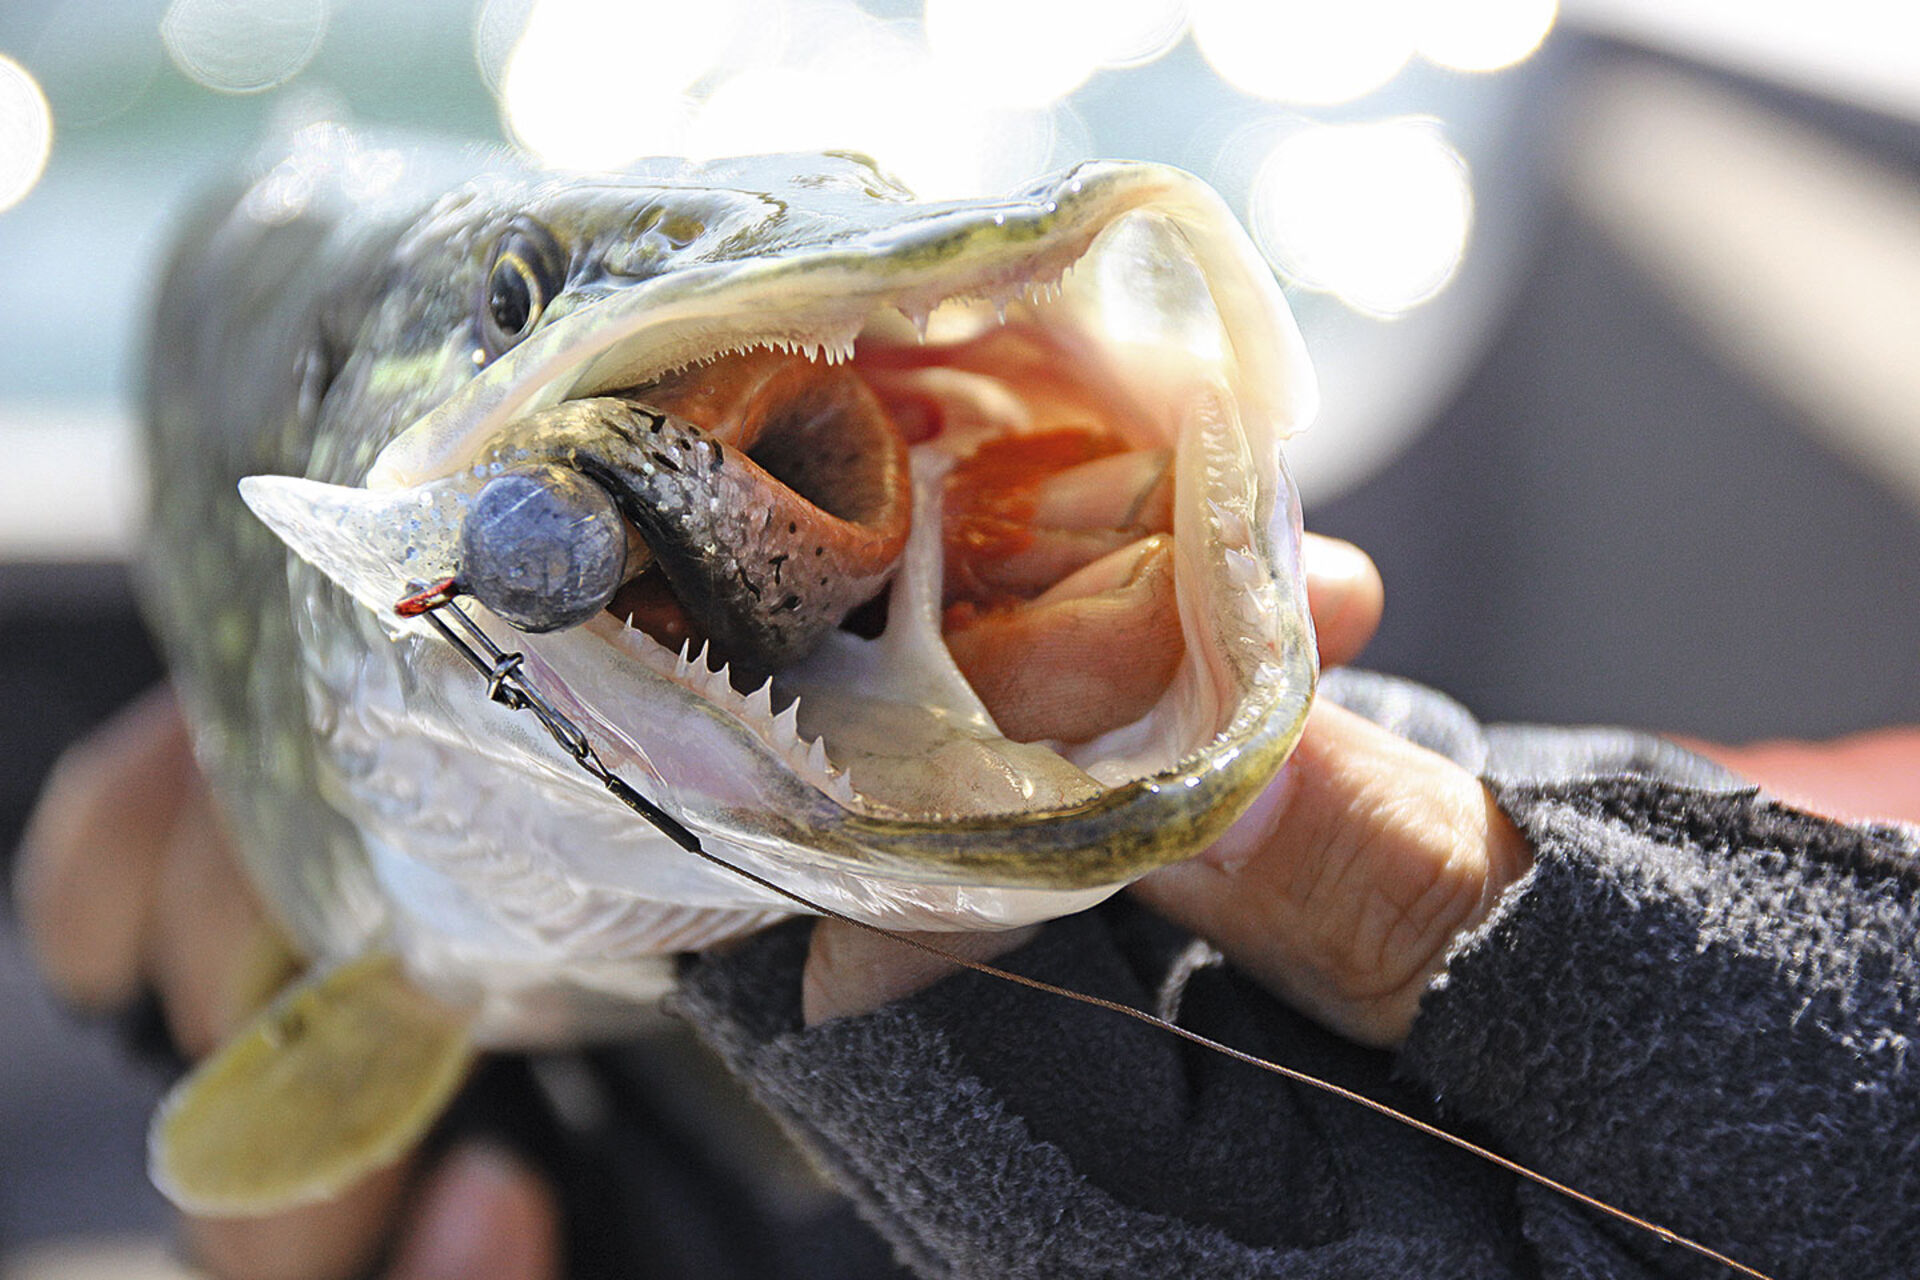  Gummifische am Bleikopf gehören zu den beliebtesten Raubfischködern. Mit Jigs kann man - geschleppt und geworfen - in verschiedenen Tiefen fischen. Sie lassen sich einfach über die Rolle und Rute variabel führen.  